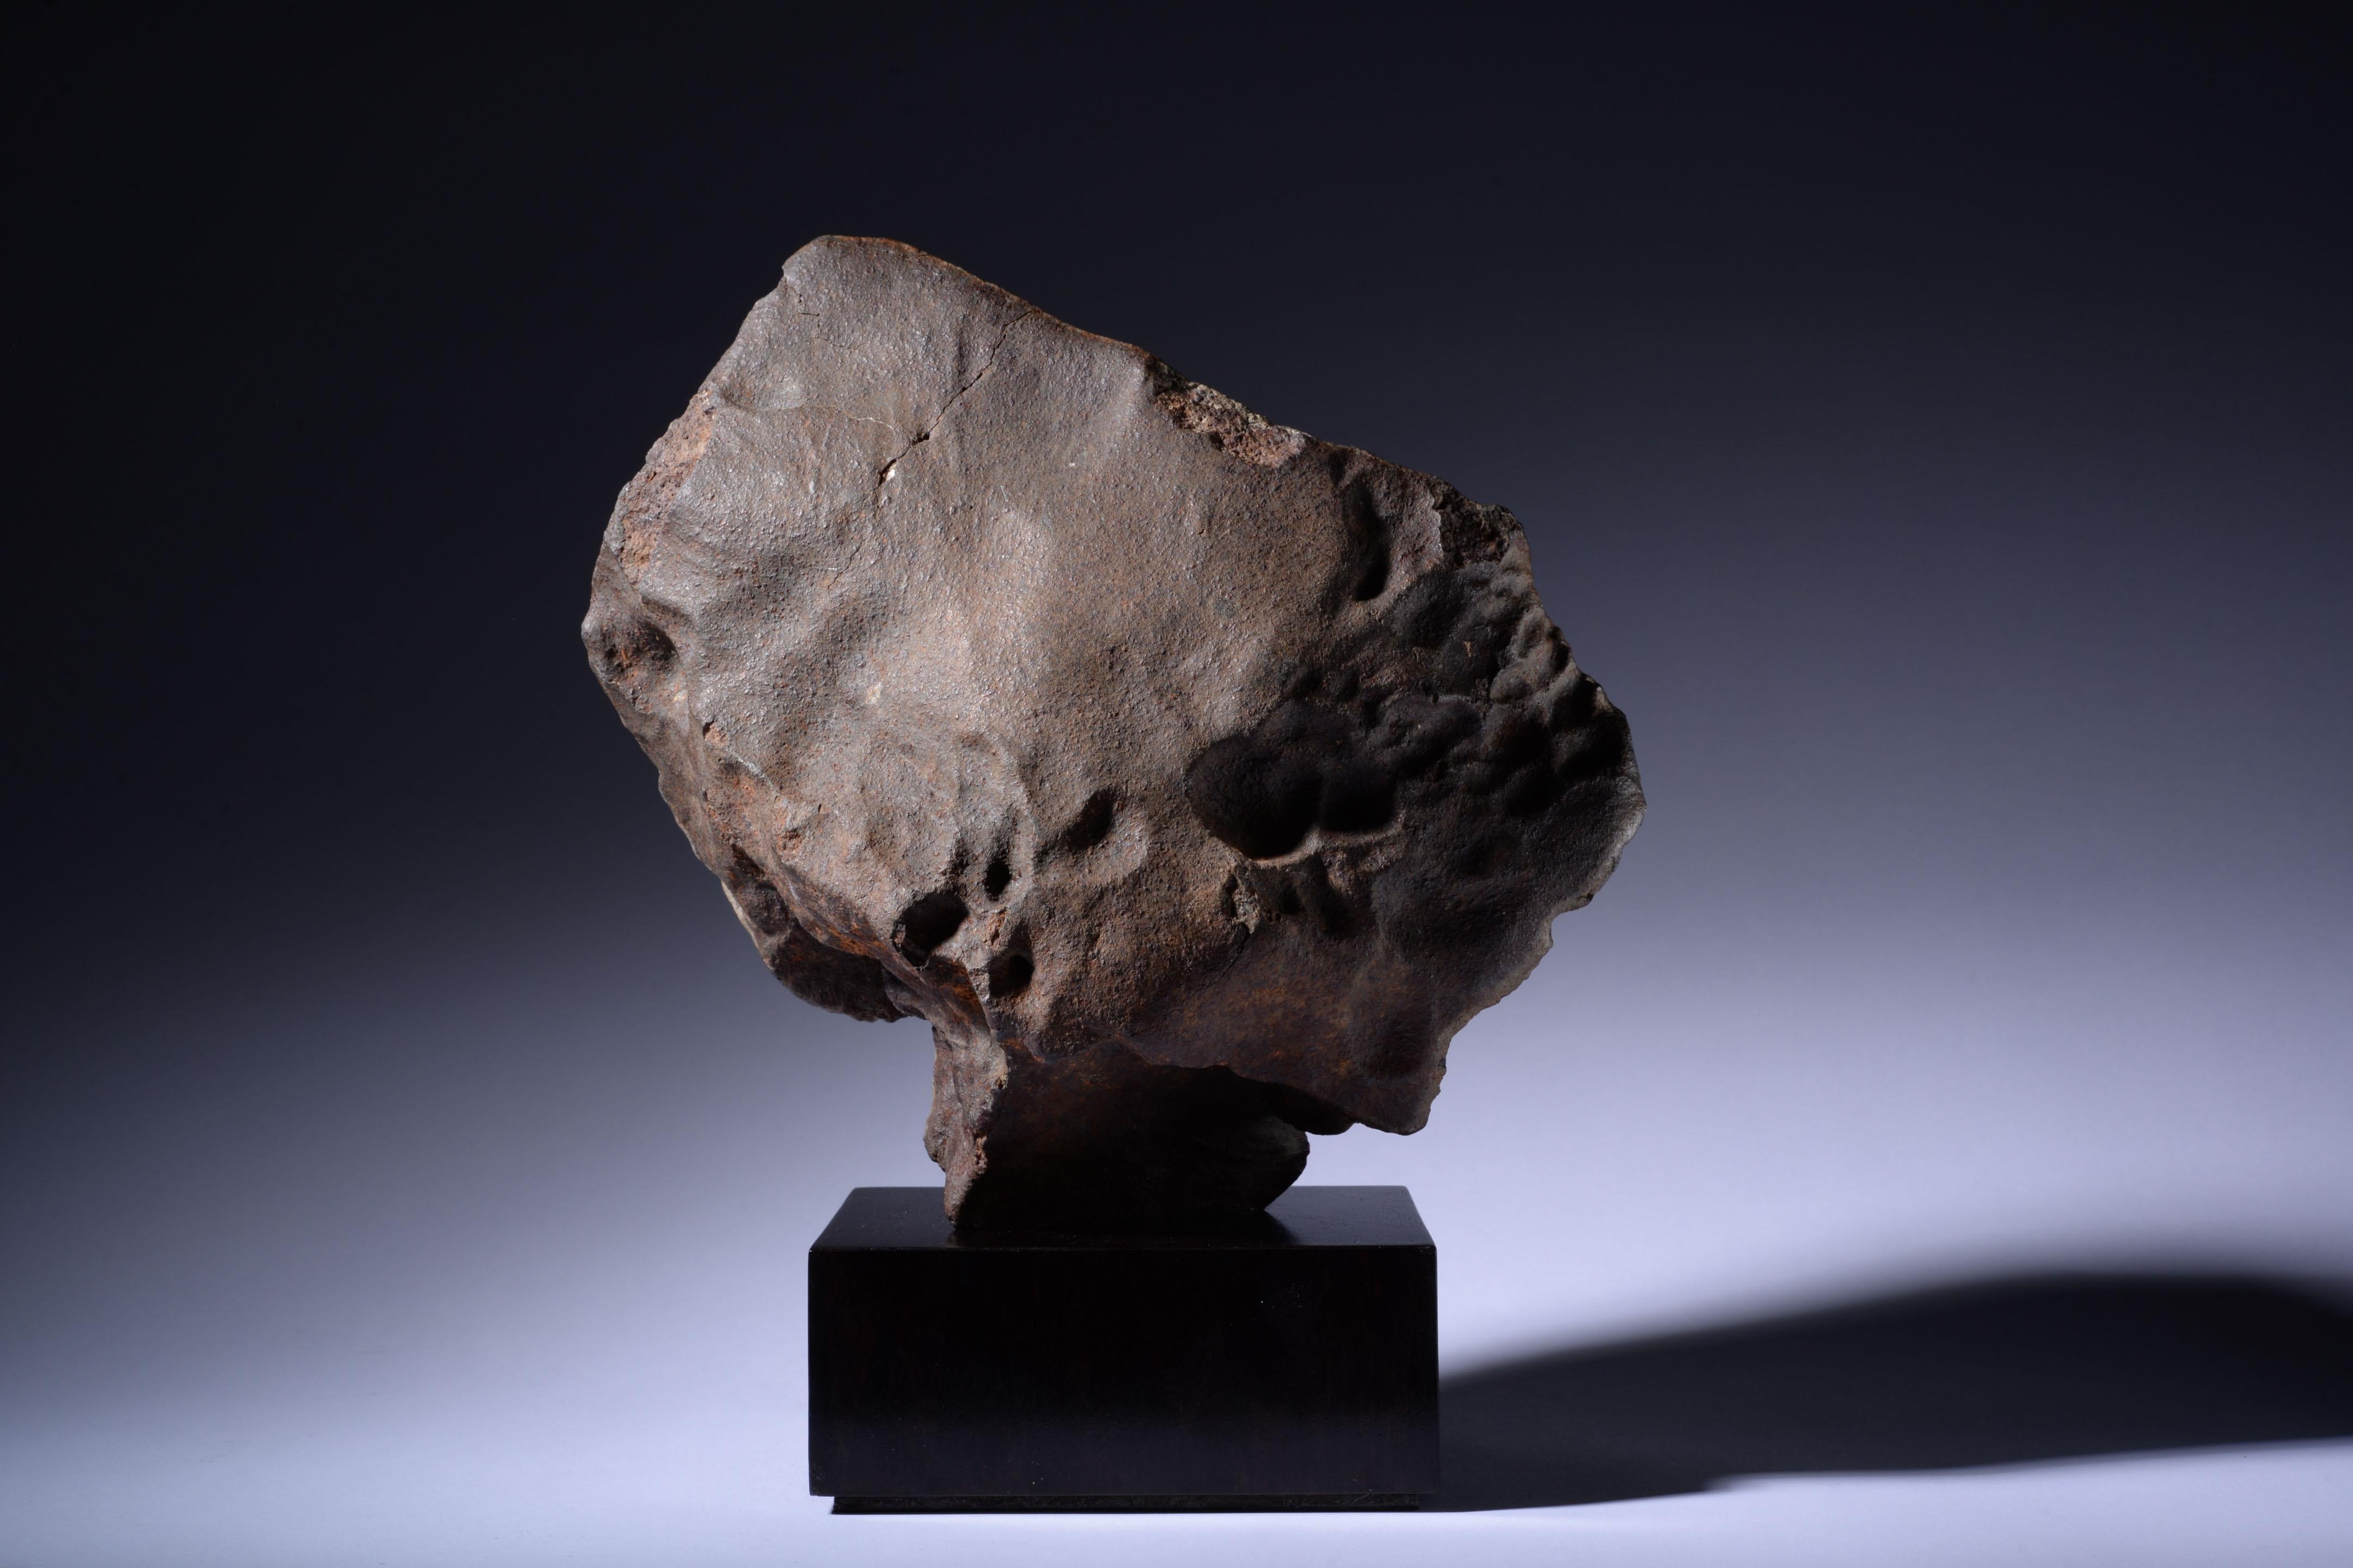 Météorite chondrite orientée Circa 4,56 milliards d'années
Chondrite
24 x 20 cm, 28 cm de hauteur sur la base
7.1 kg

Une météorite chondrite sculpturale et magnifiquement altérée ; en entrant dans l'atmosphère, cette pierre extraterrestre